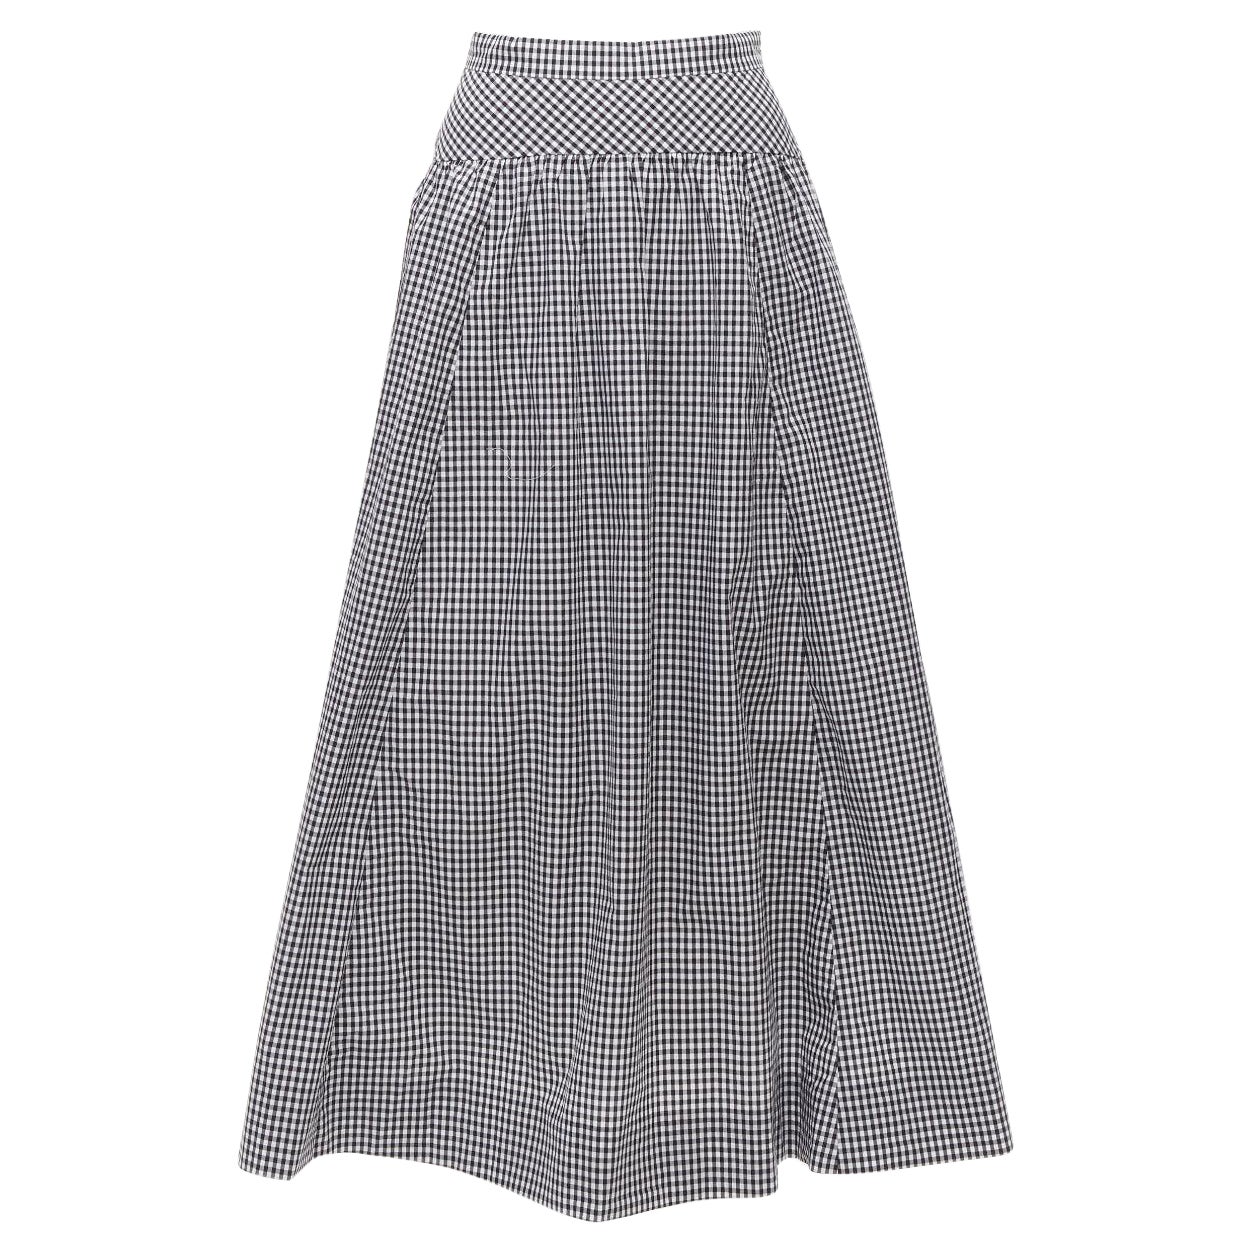 J.CREW white black gingham cotton panelled yoke A-line full skirt US0 XS